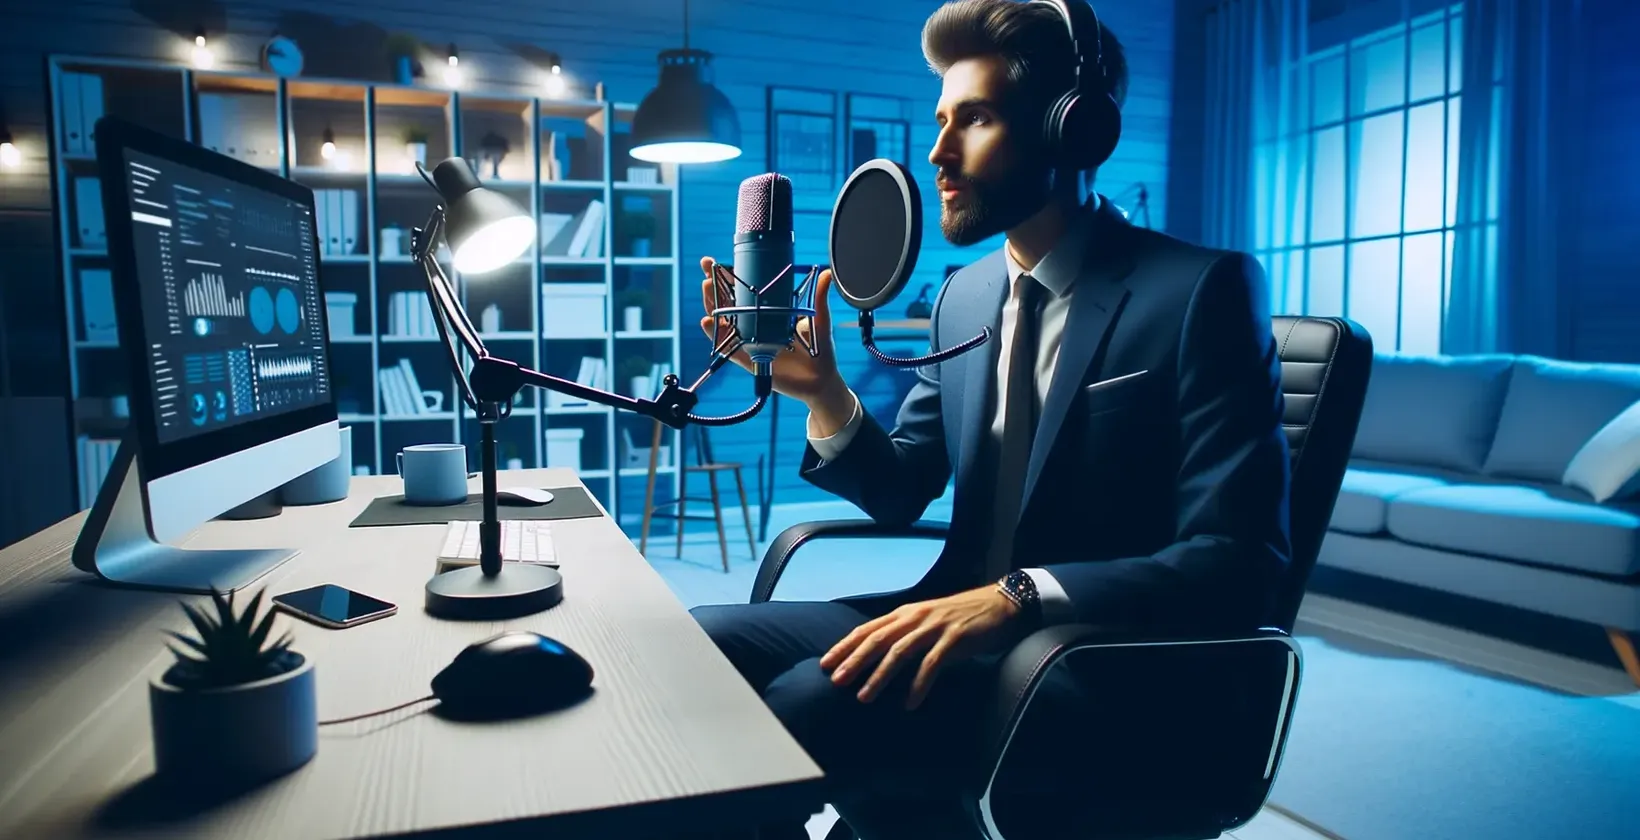 En formelt kledd mann sitter ved et skrivebord og holder en mikrofon mens han bruker en tale-til-tekst-omformer.